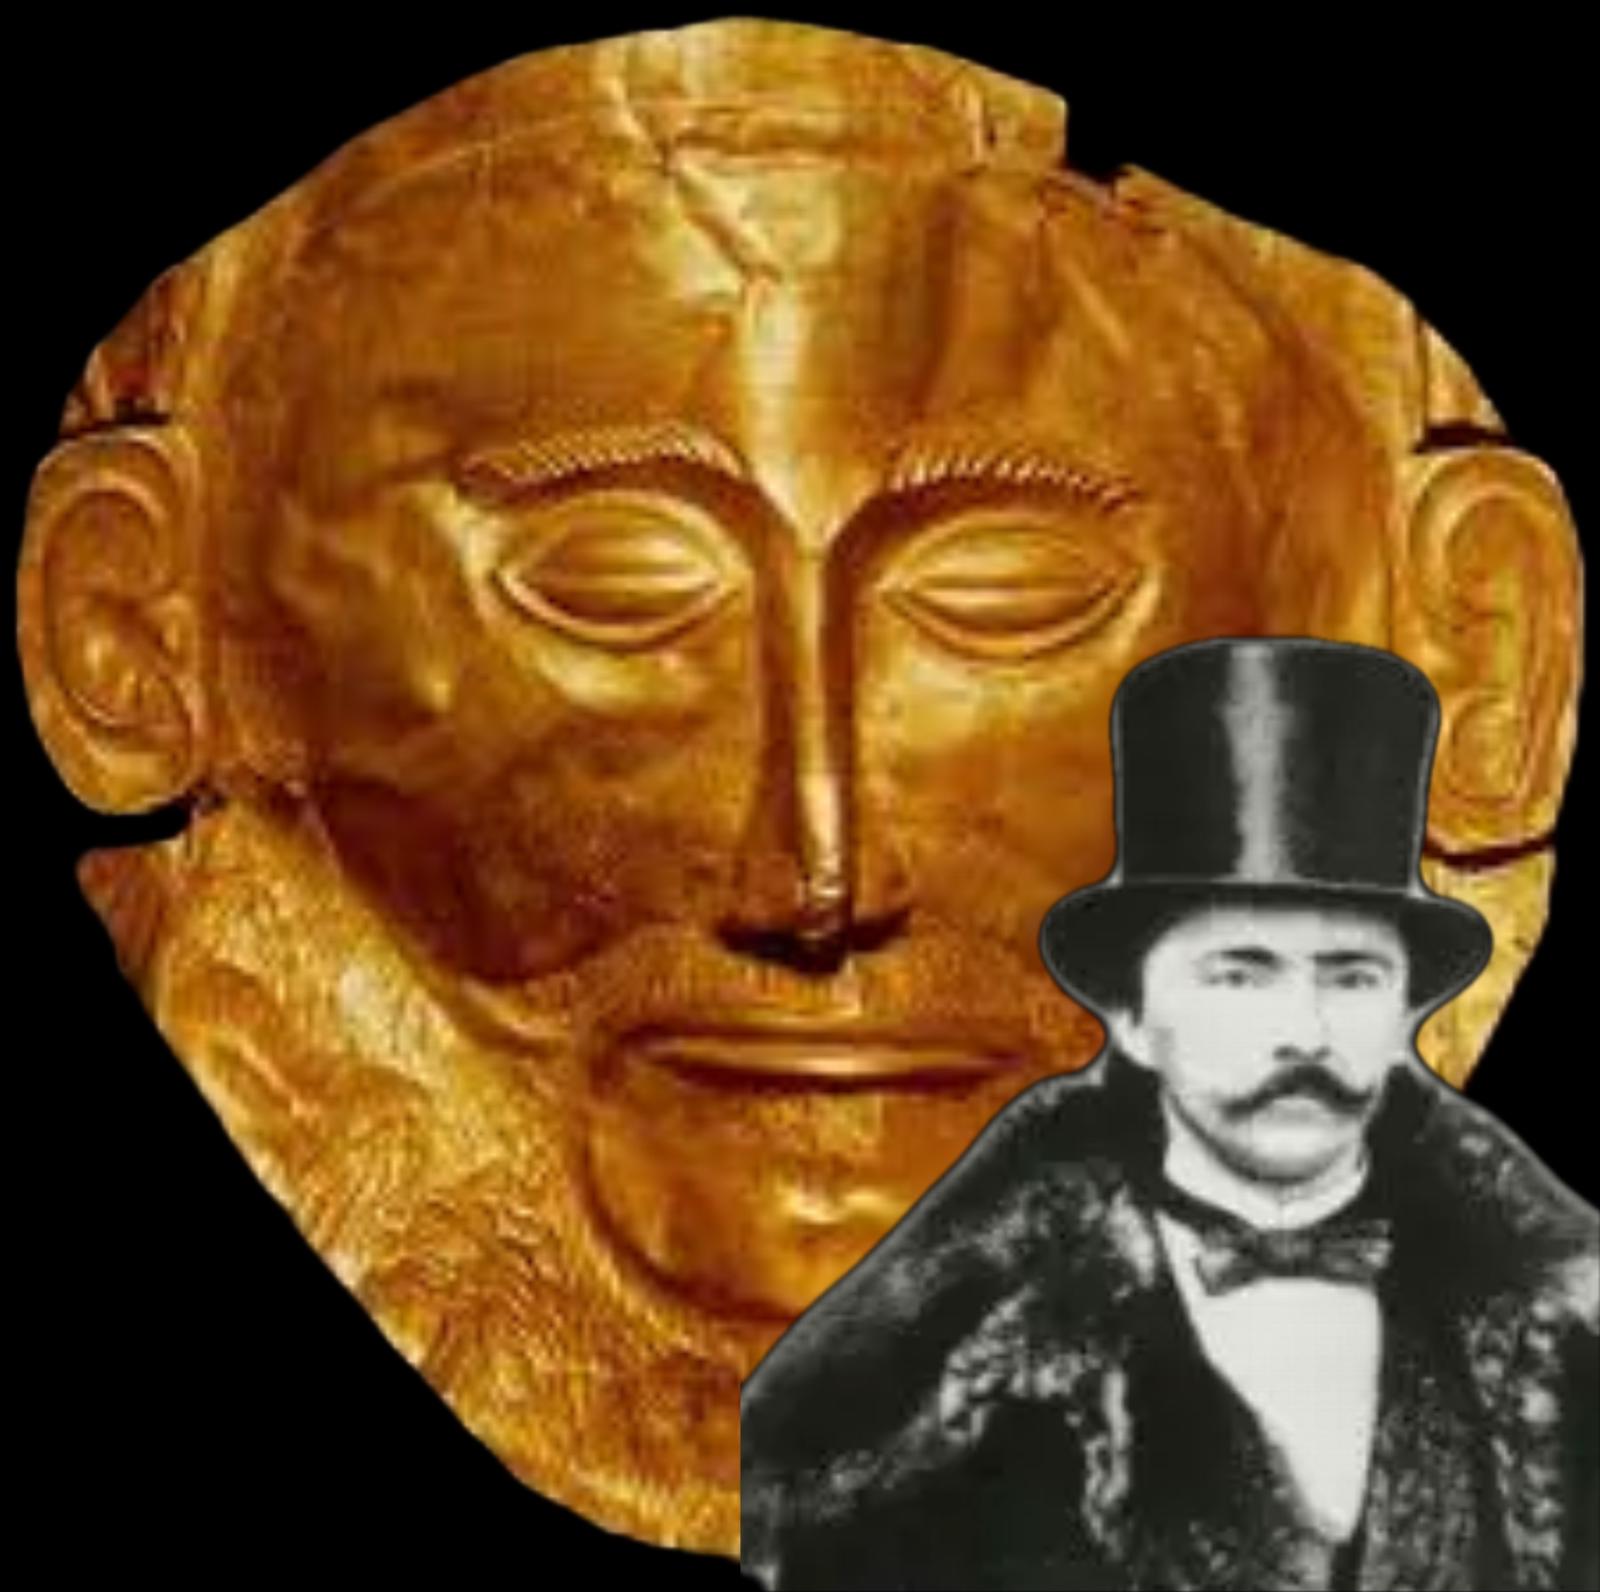 La maschera di Agamennone è un falso e Schliemann si prende gioco di noi da 149 anni